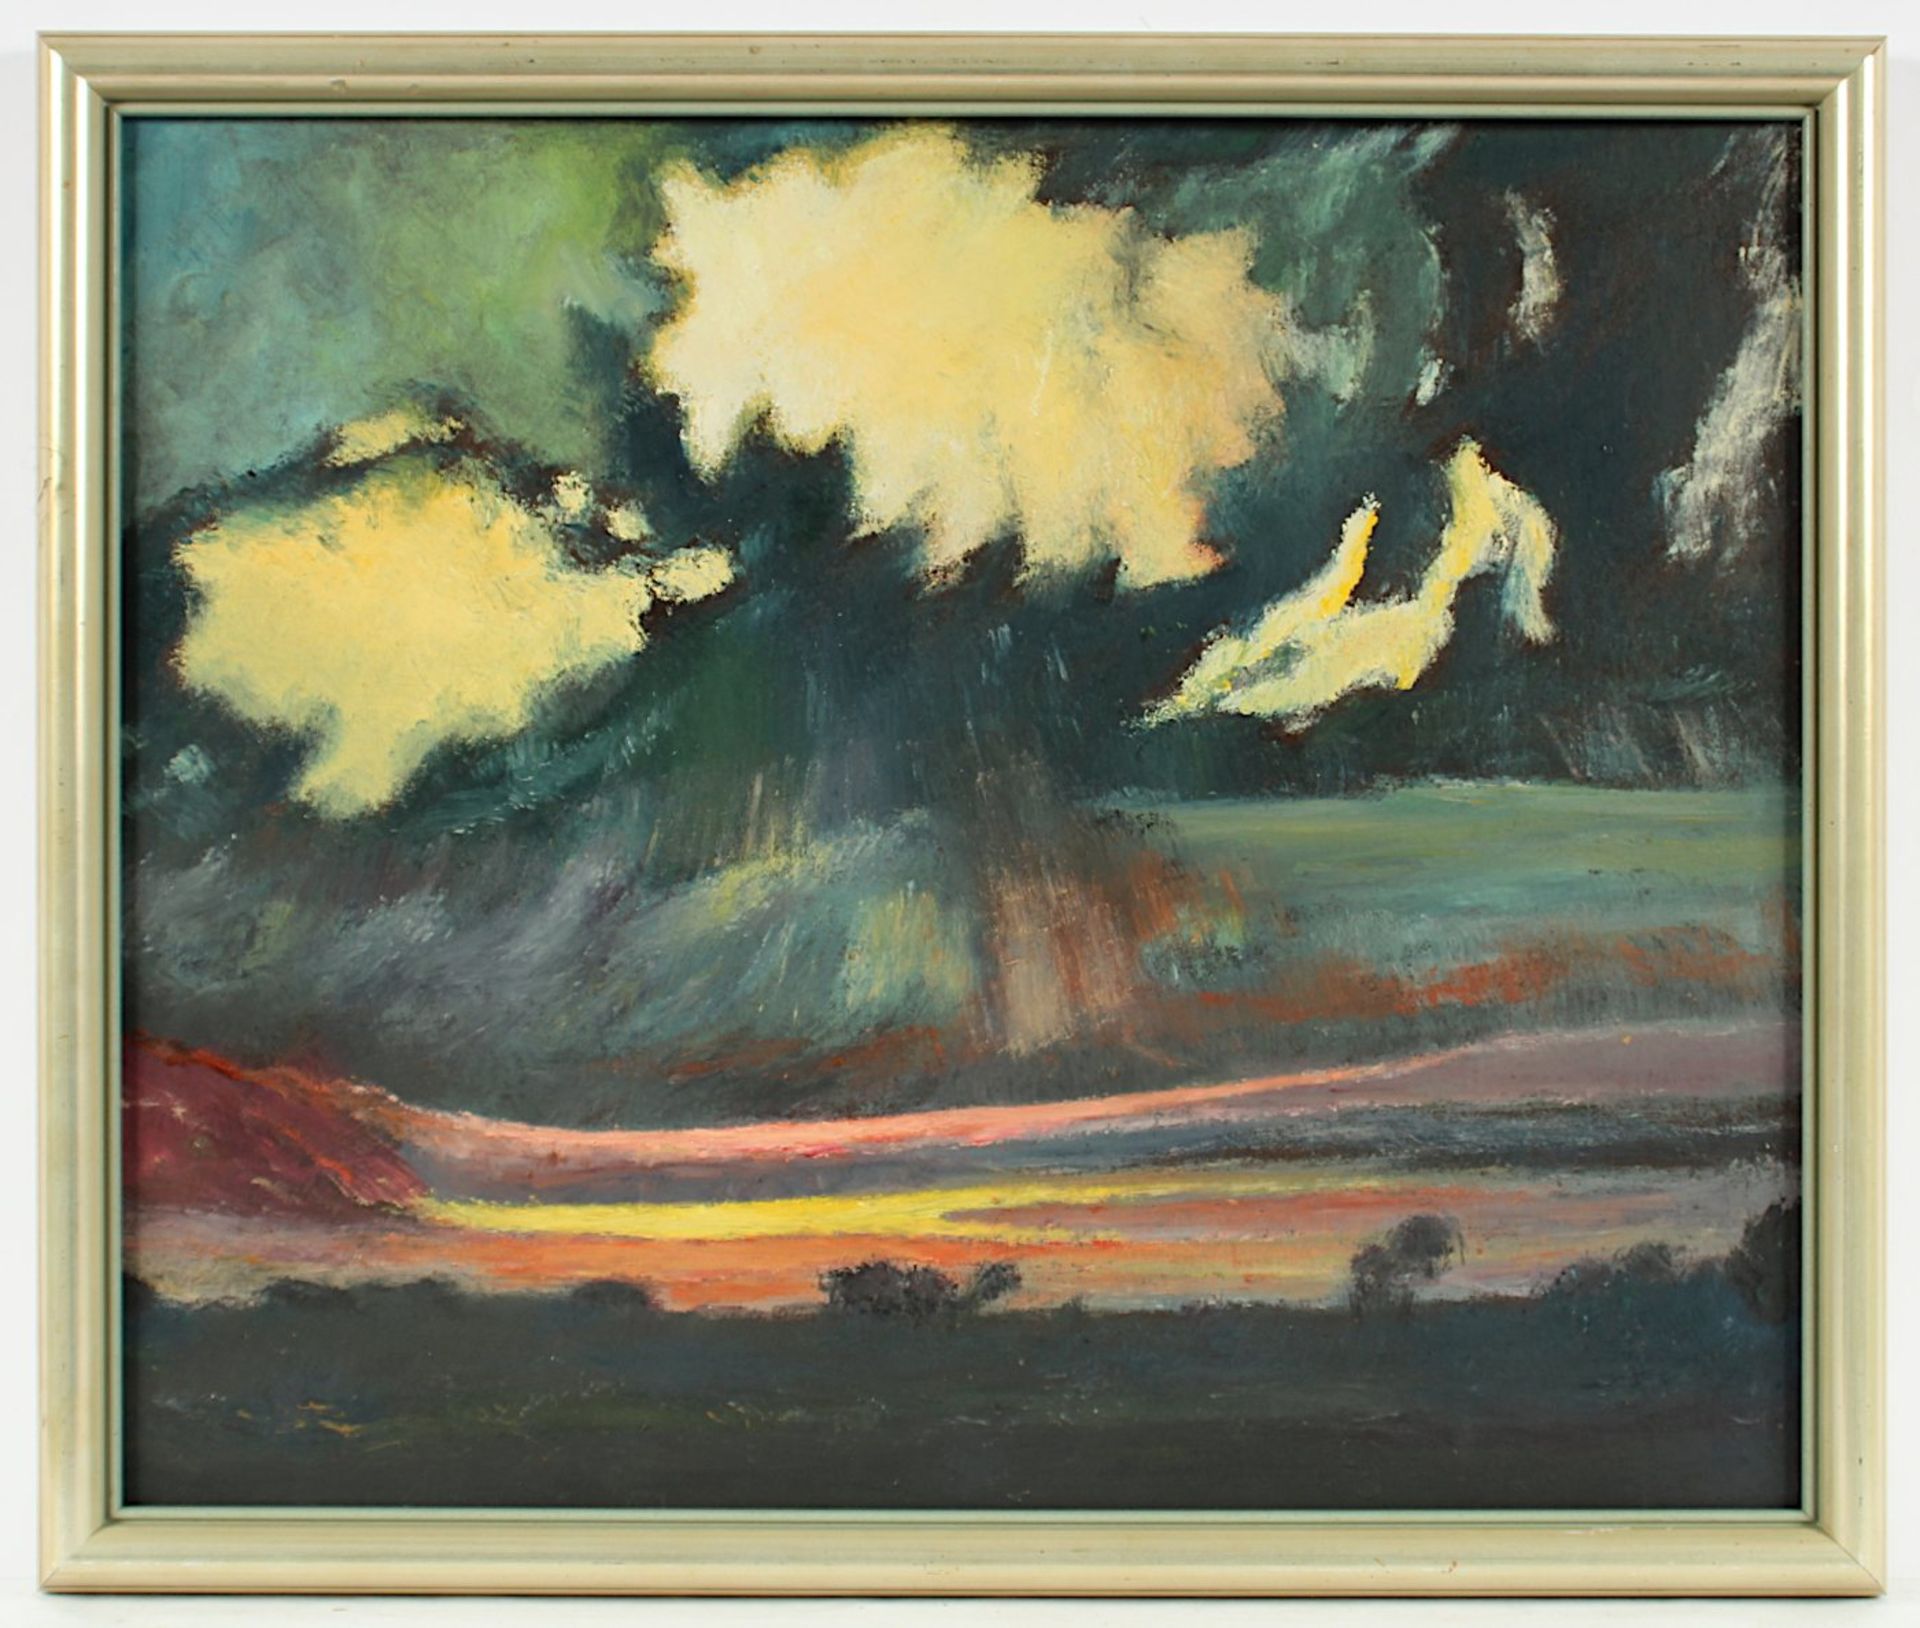 DODENHOFF, Heinz (1889-1981), "Abstrakte Landschaft", Öl/Malkarton, 60 x 50, verso signiert sowie